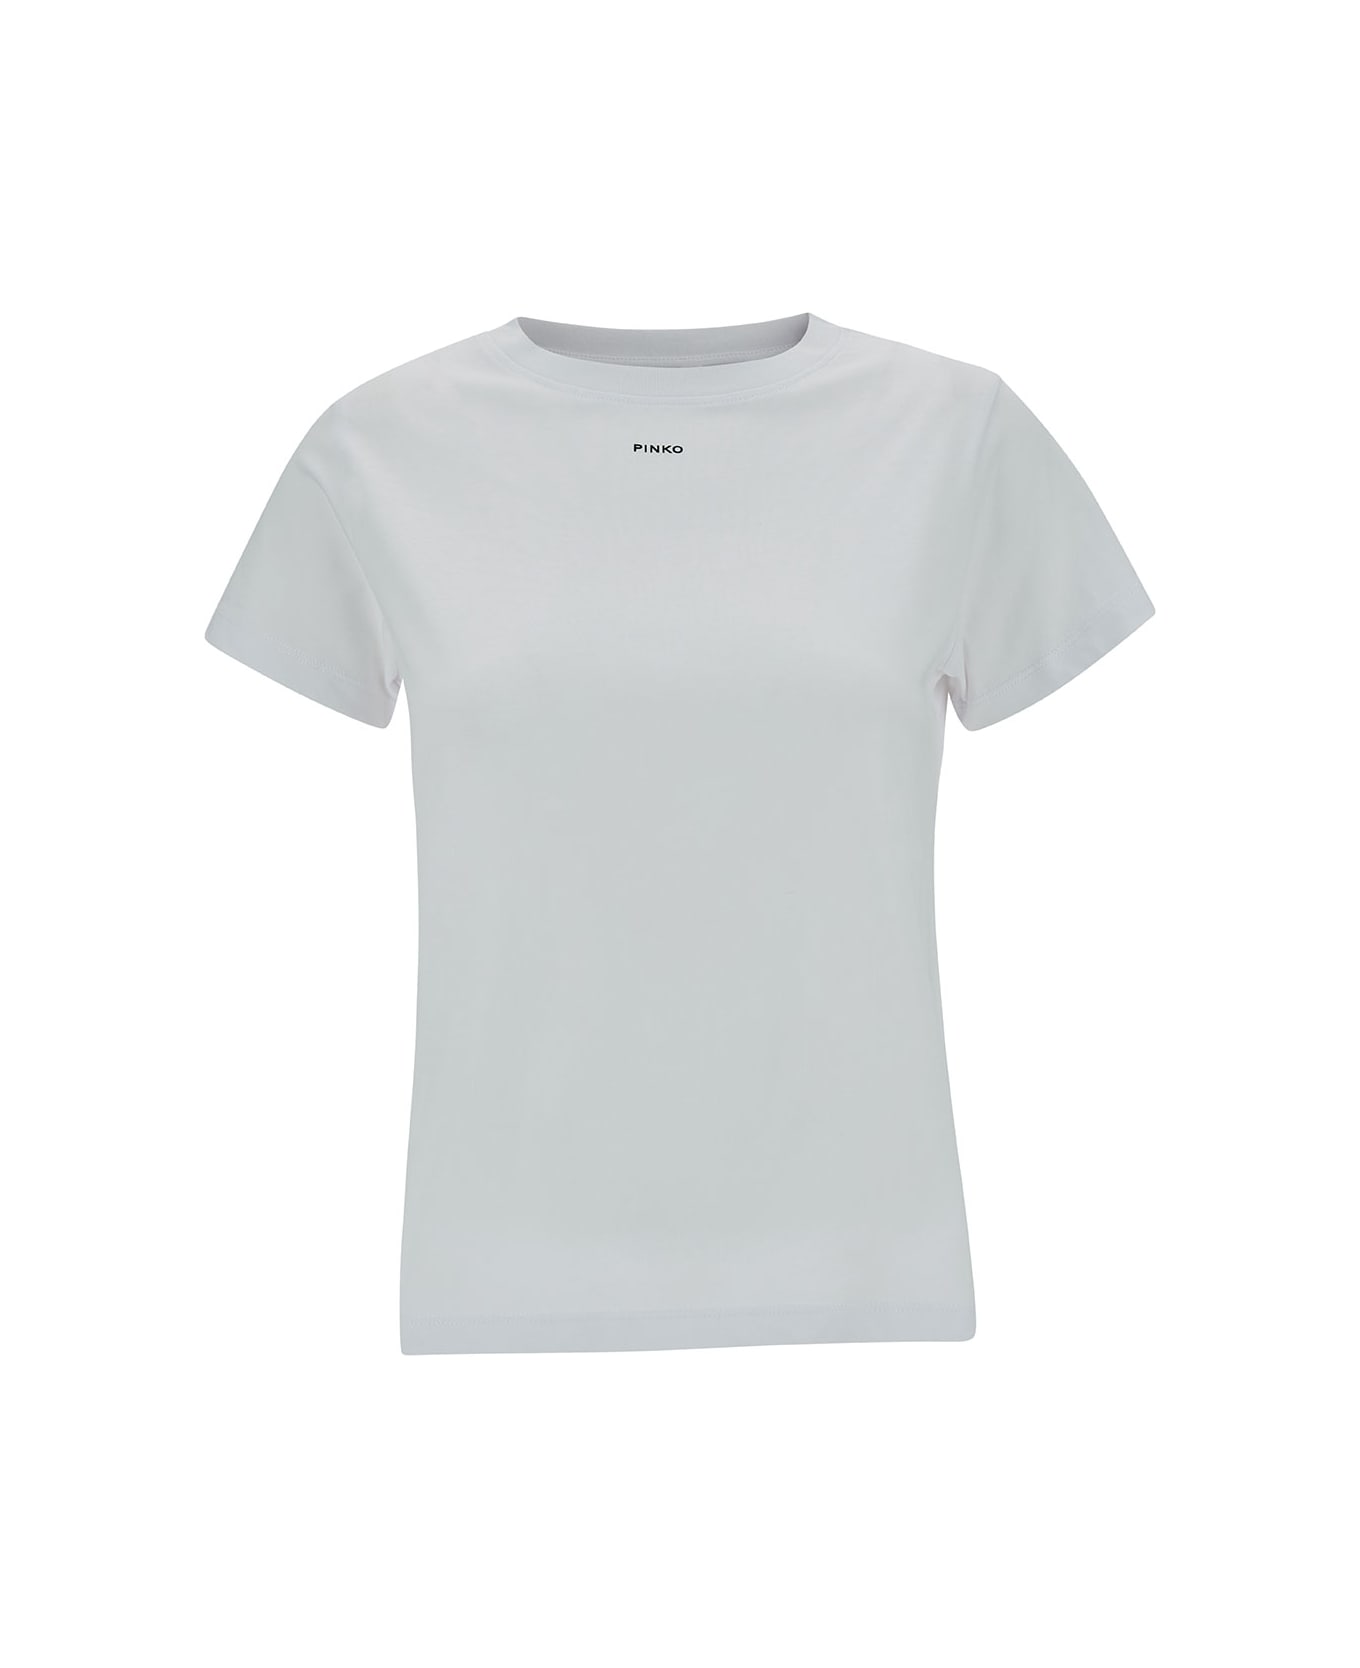 Pinko Mini Logo Crewneck T-shirt - White